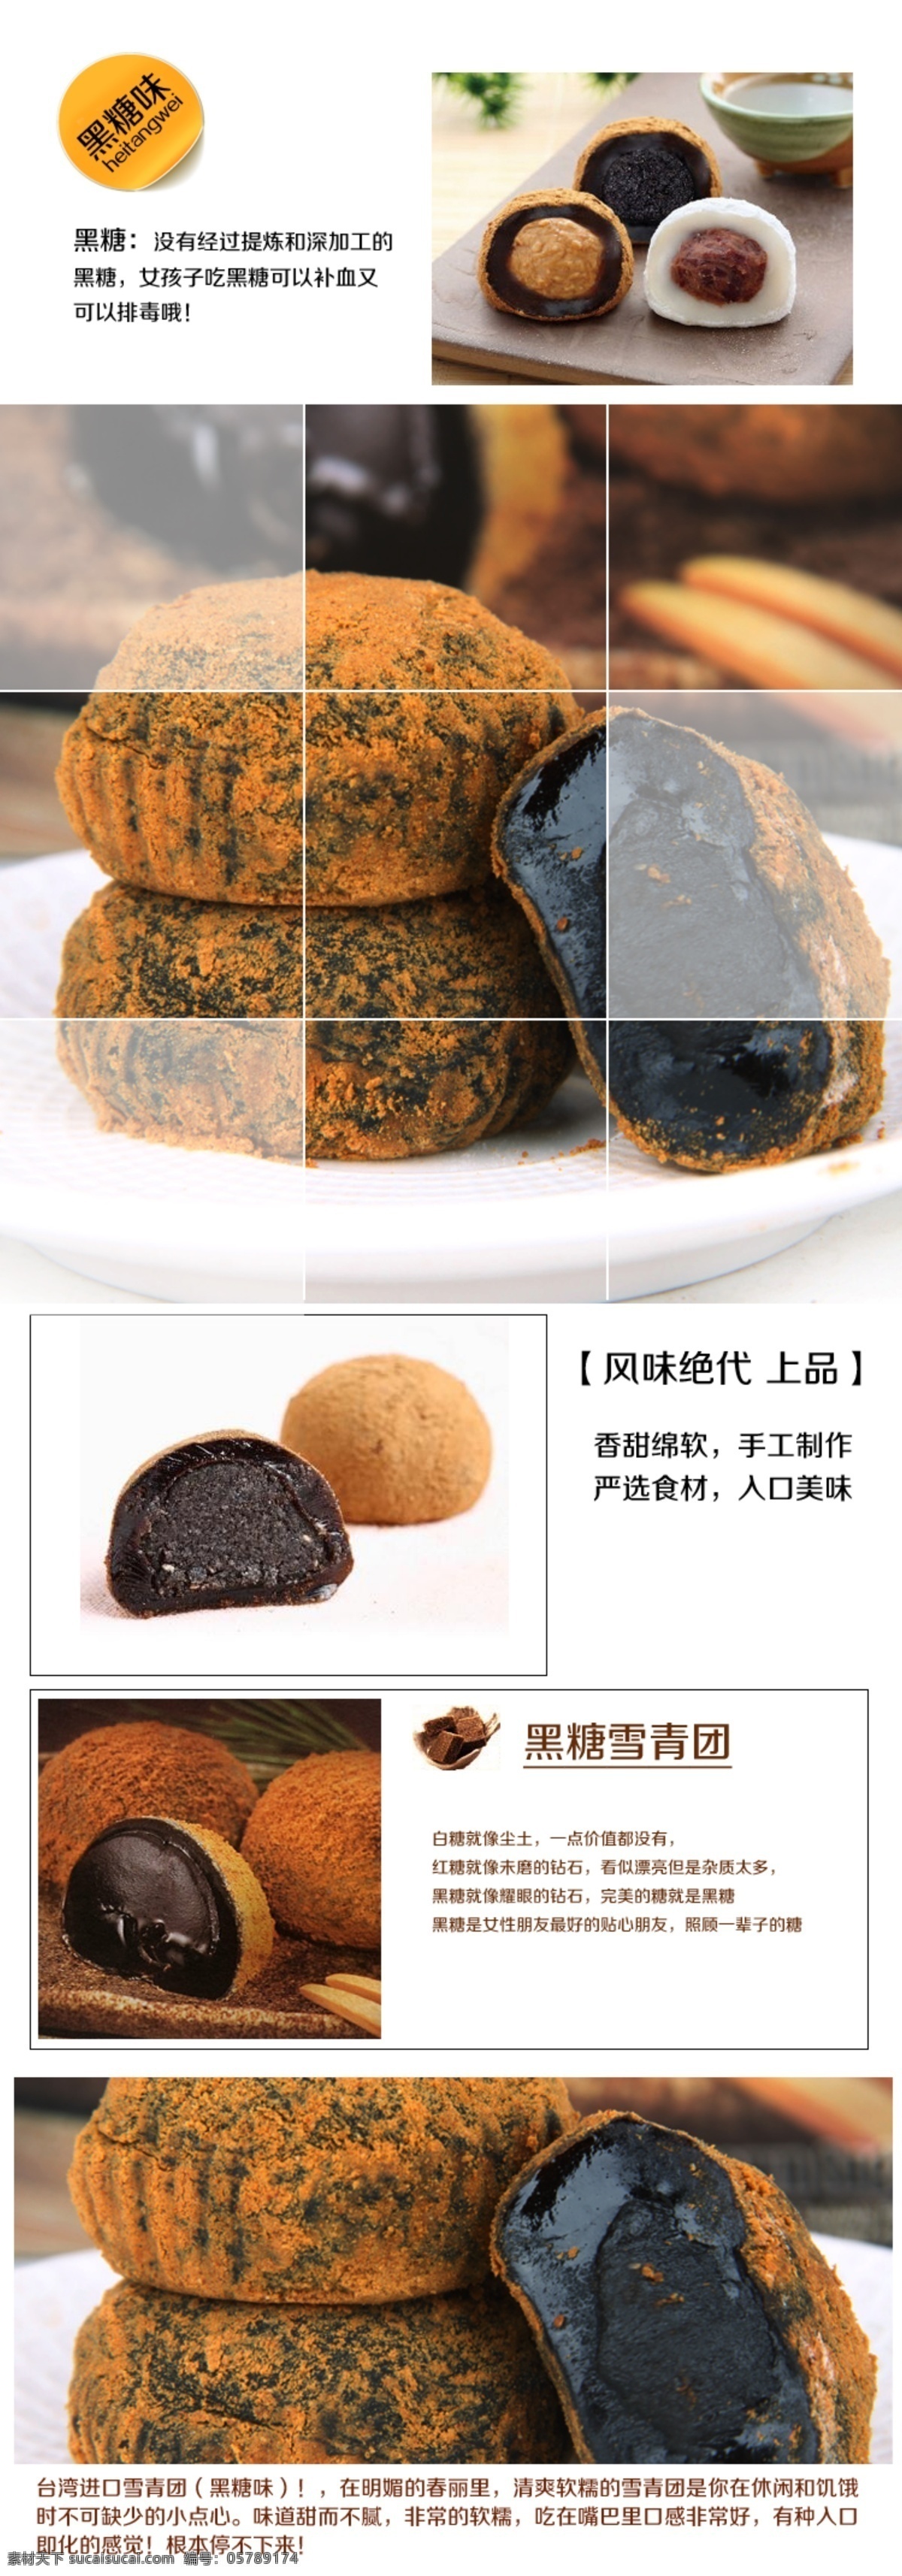 台湾 麻薯 效果图 食品 雪青团 淘宝素材 其他淘宝素材